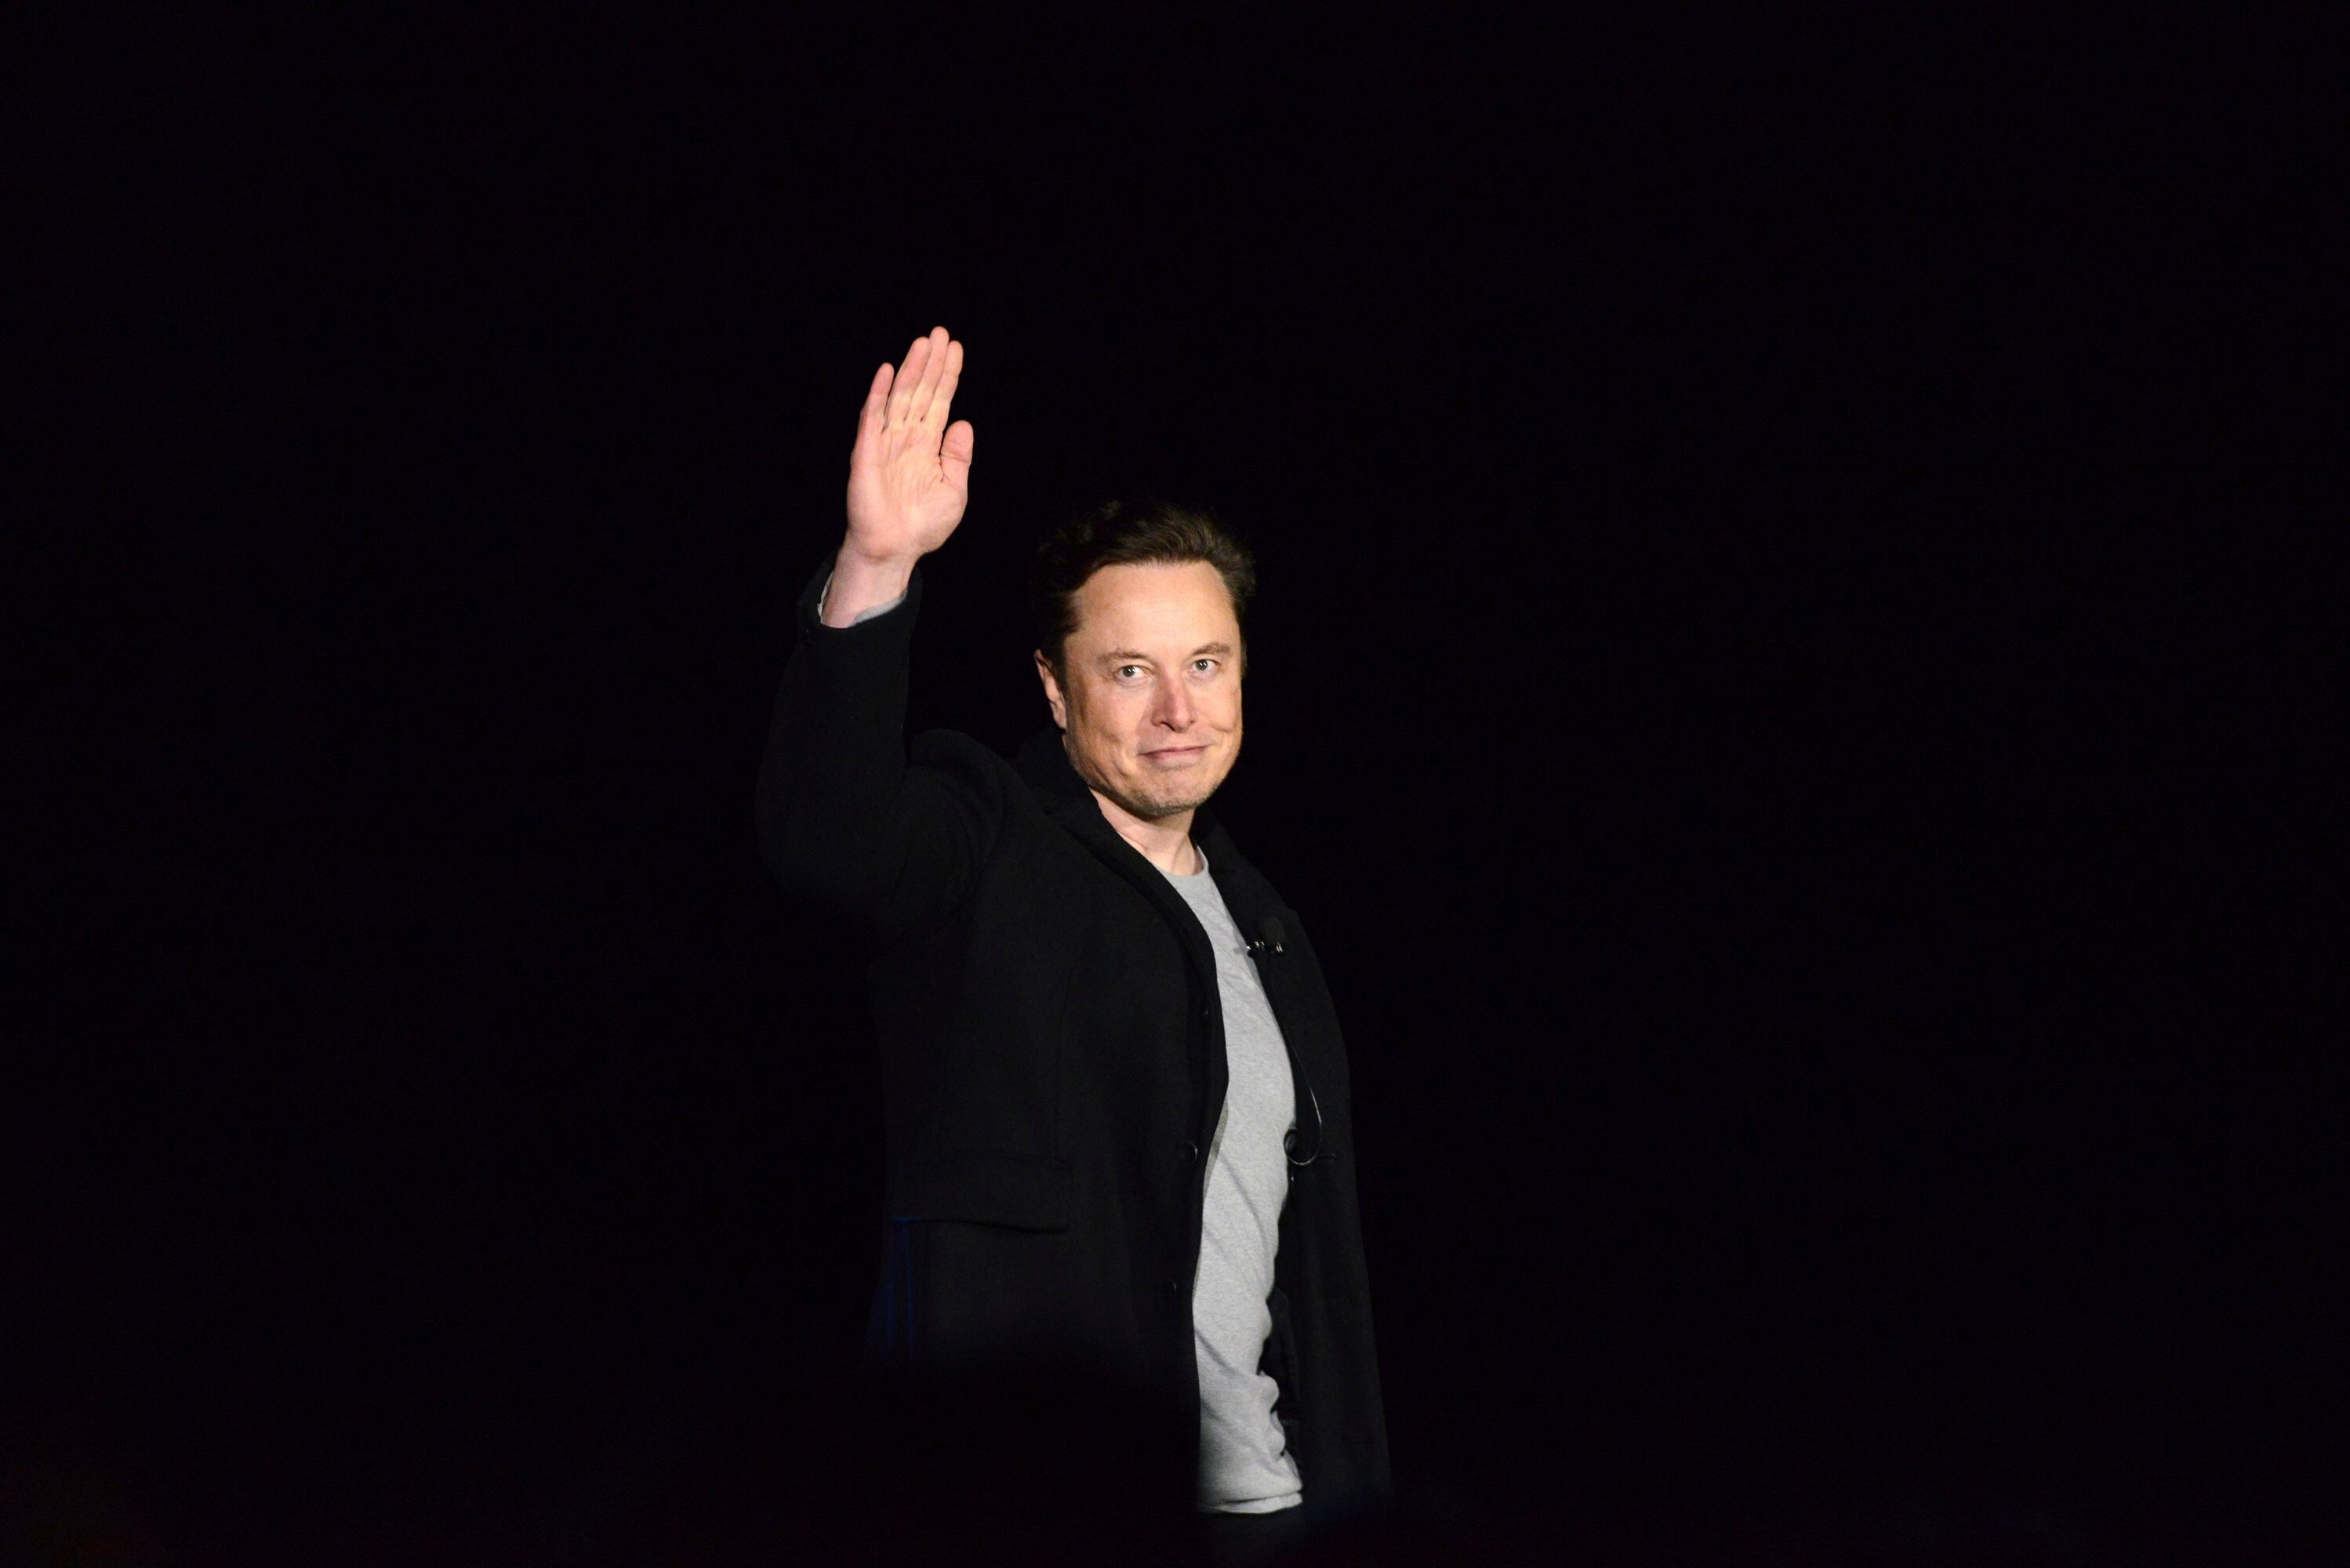 Elon Musk será temporalmente CEO de Twitter tras su compra, según CNBC